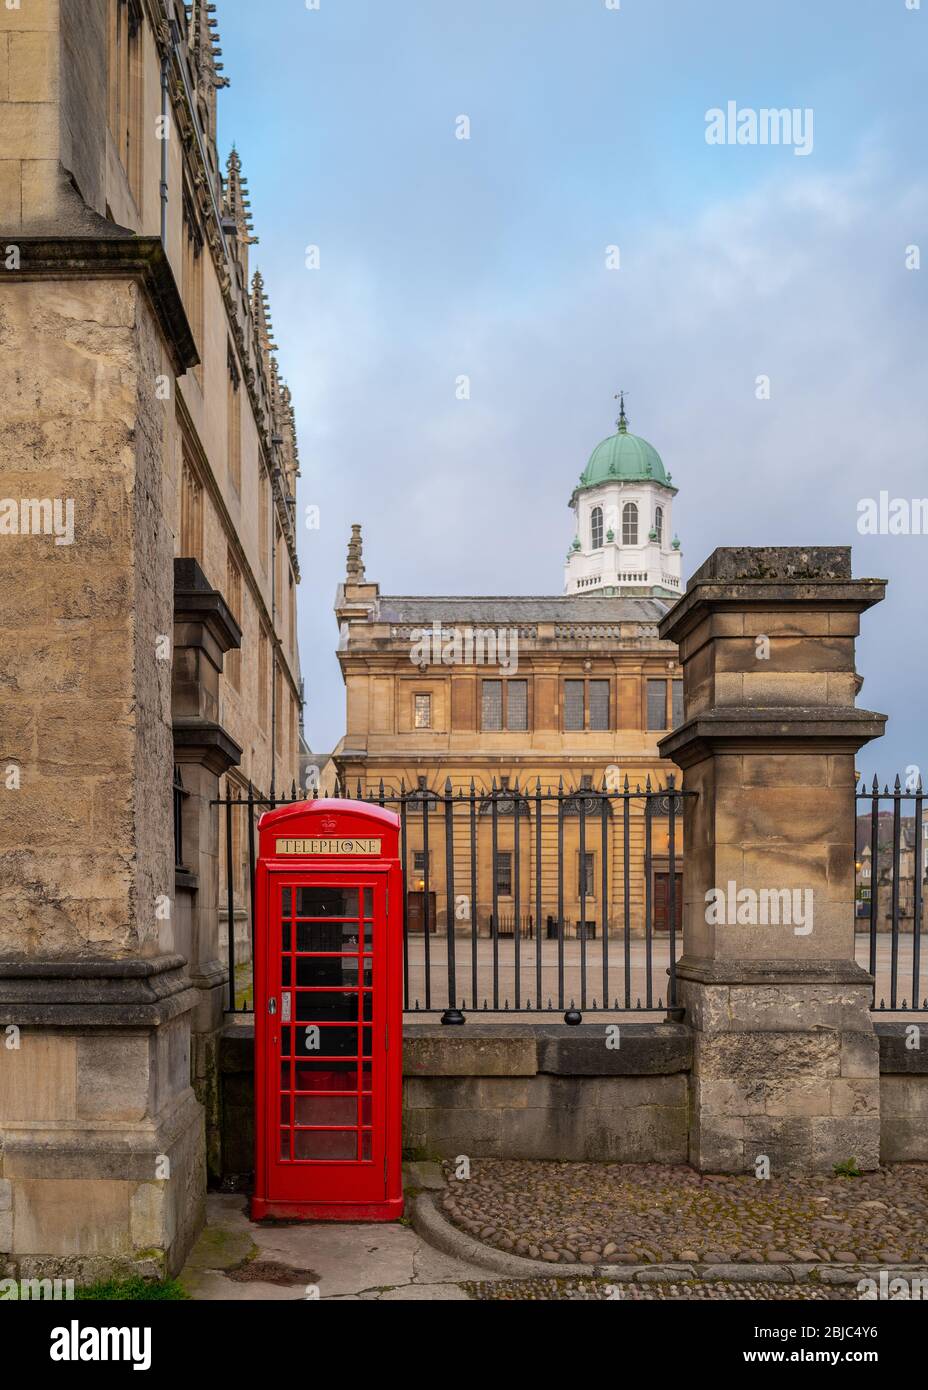 Théâtre Sheldonian, conçu par Sir Christopher Wren; bibliothèque Bodleian; boîte téléphonique rouge. Silencieux pendant le verrouillage du Coronavirus / Covid-19 Banque D'Images